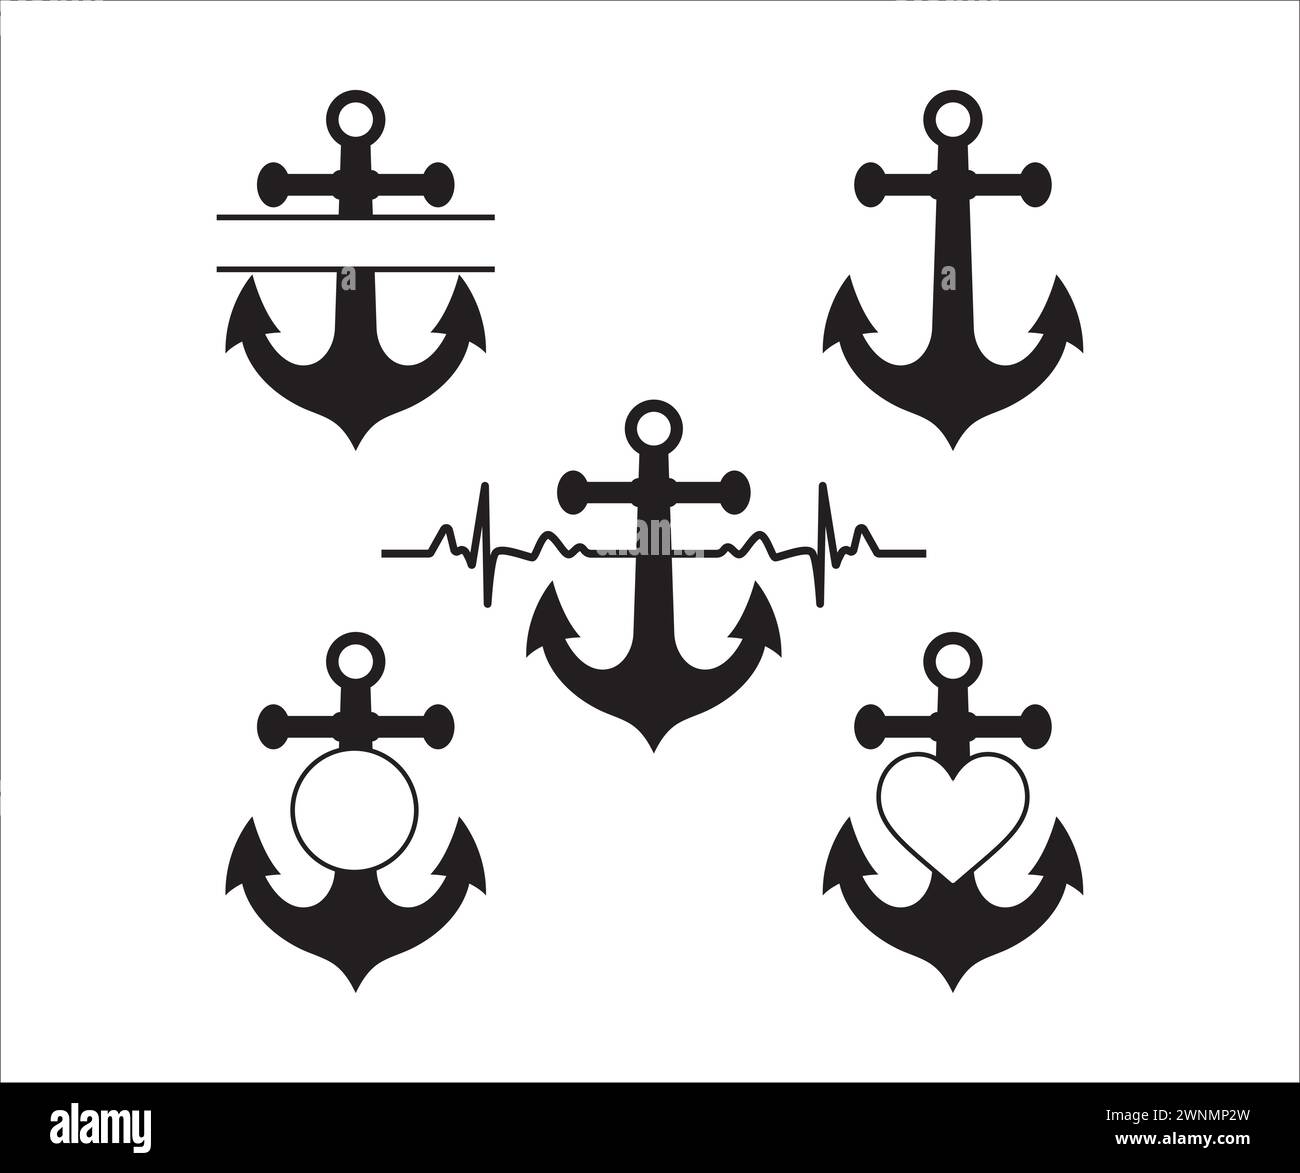 Ancre de bateau, monogramme d'ancre, SVG d'ancre, Silhouette d'ancre, vecteur de battement de coeur d'ancre, ancre de bateau divisée, nautique, ancre Illustration de Vecteur